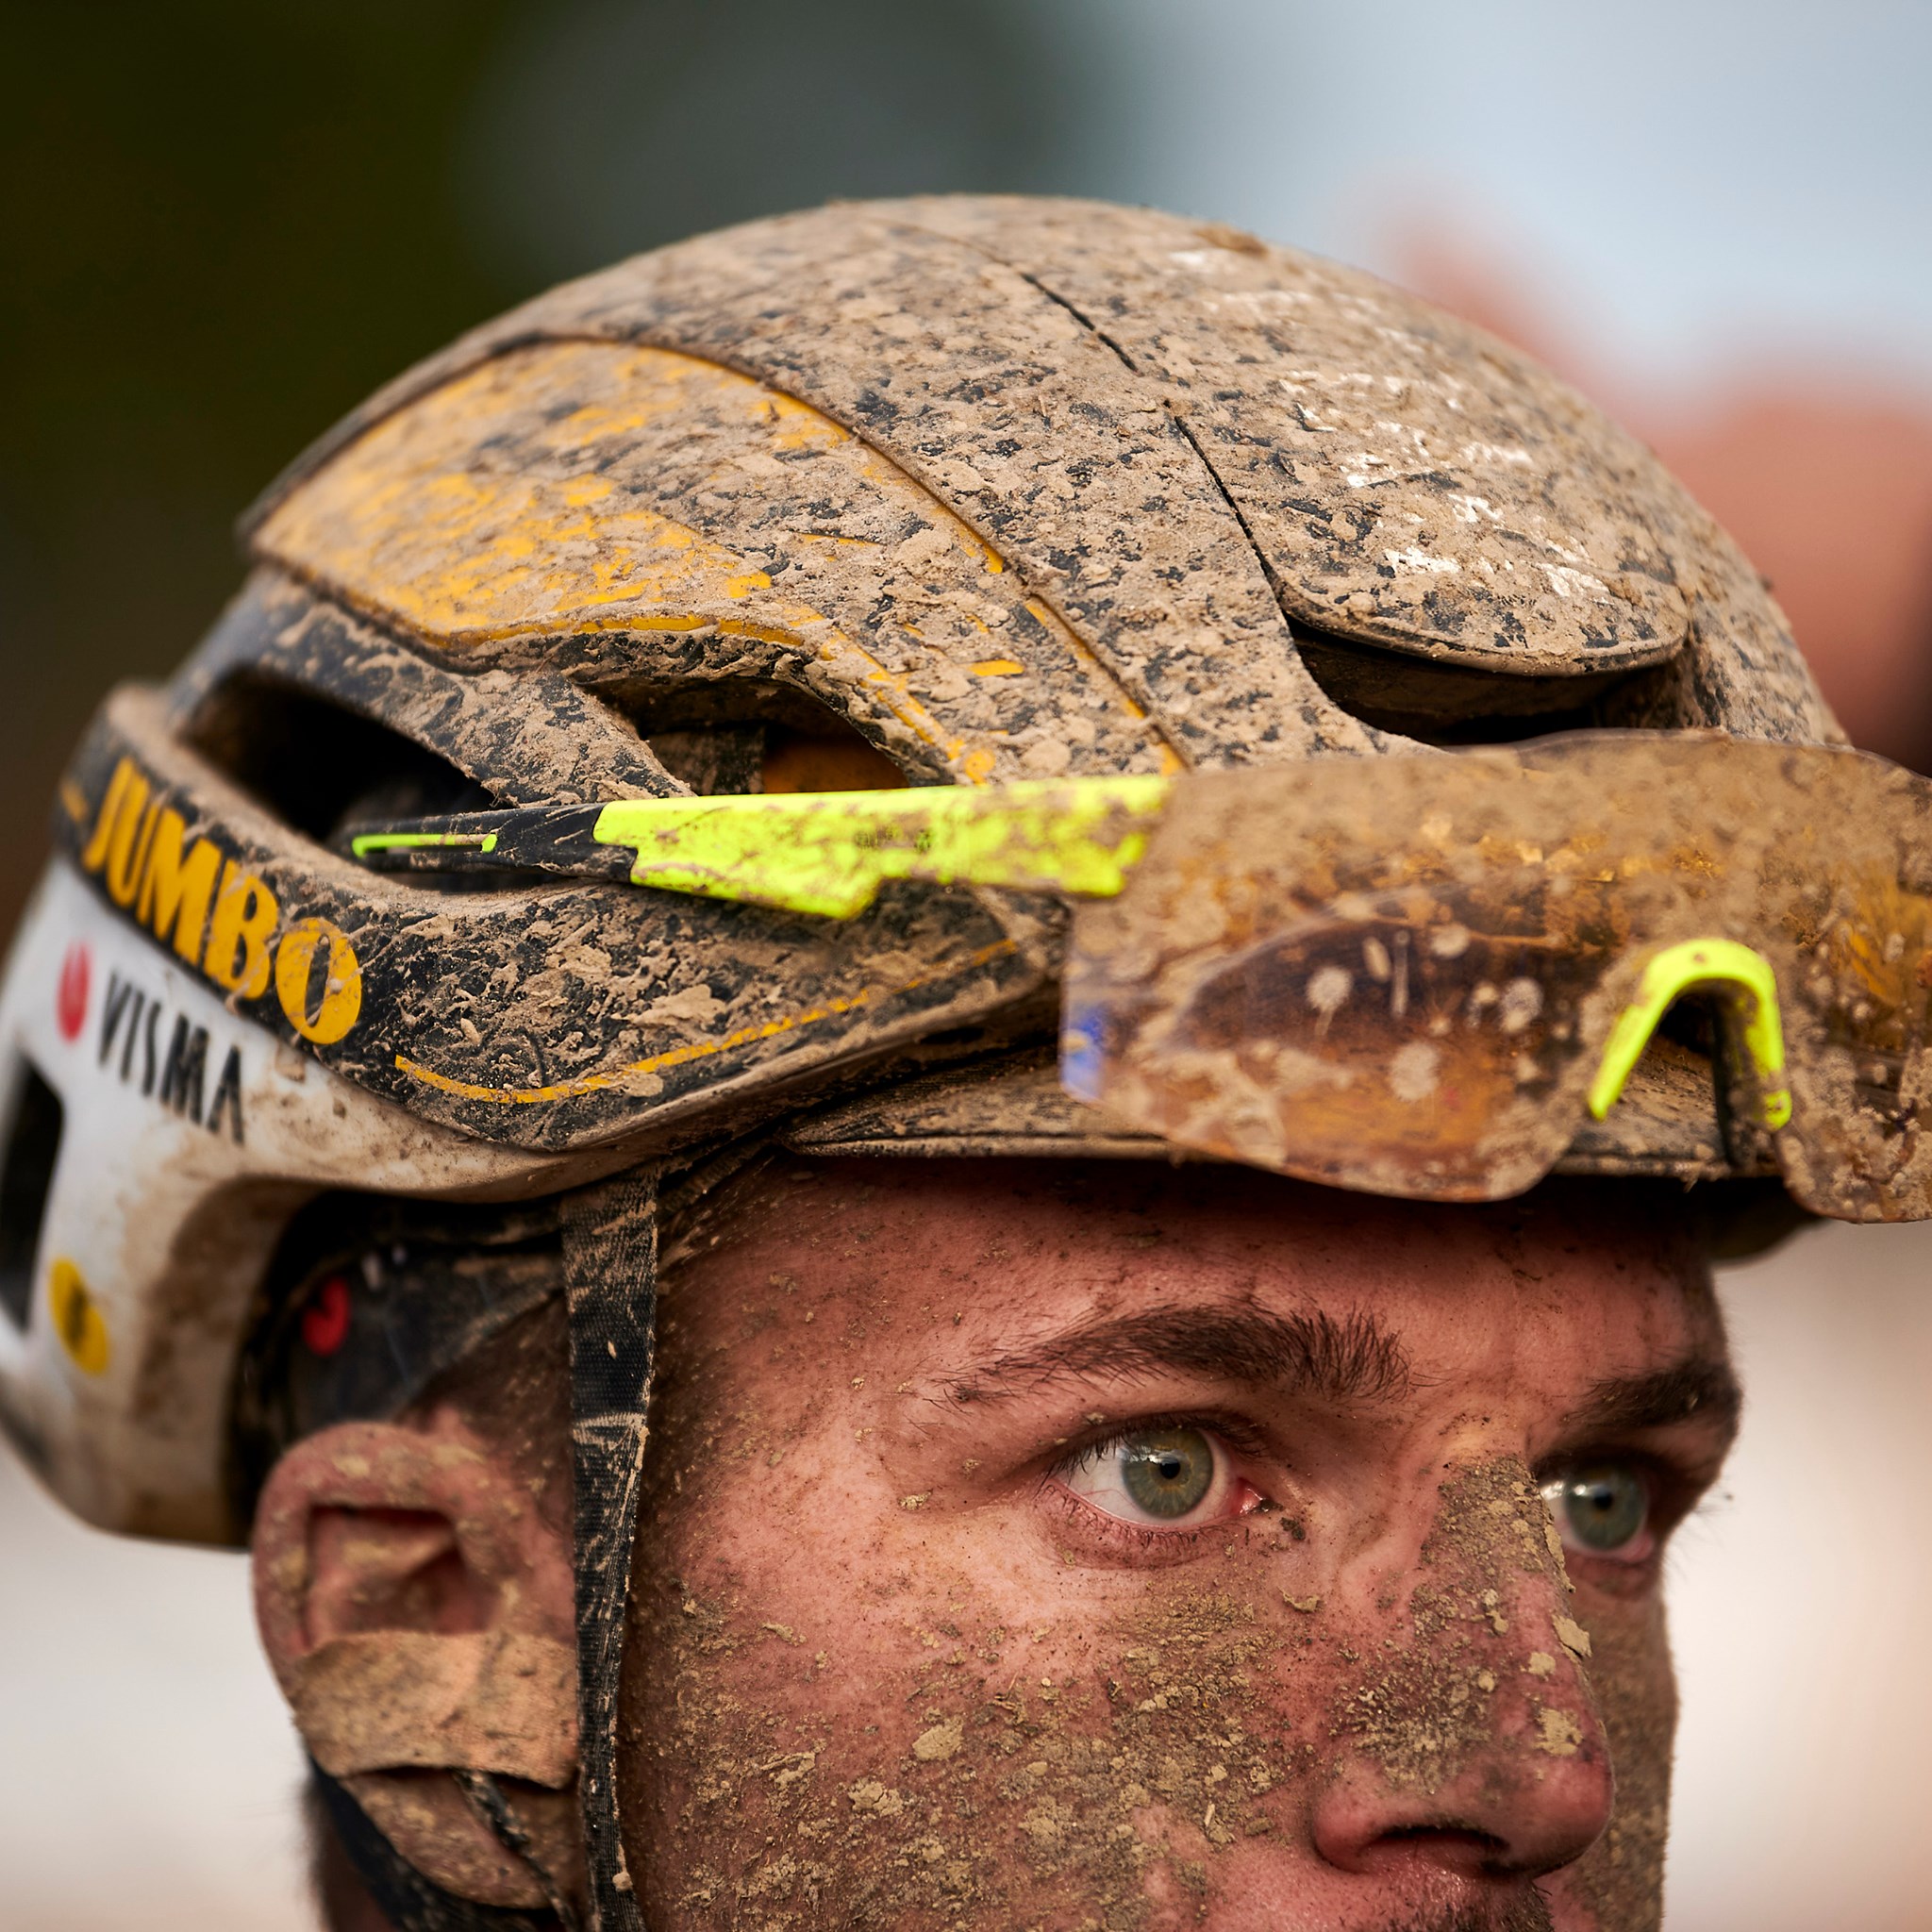 Mountain bike helmets